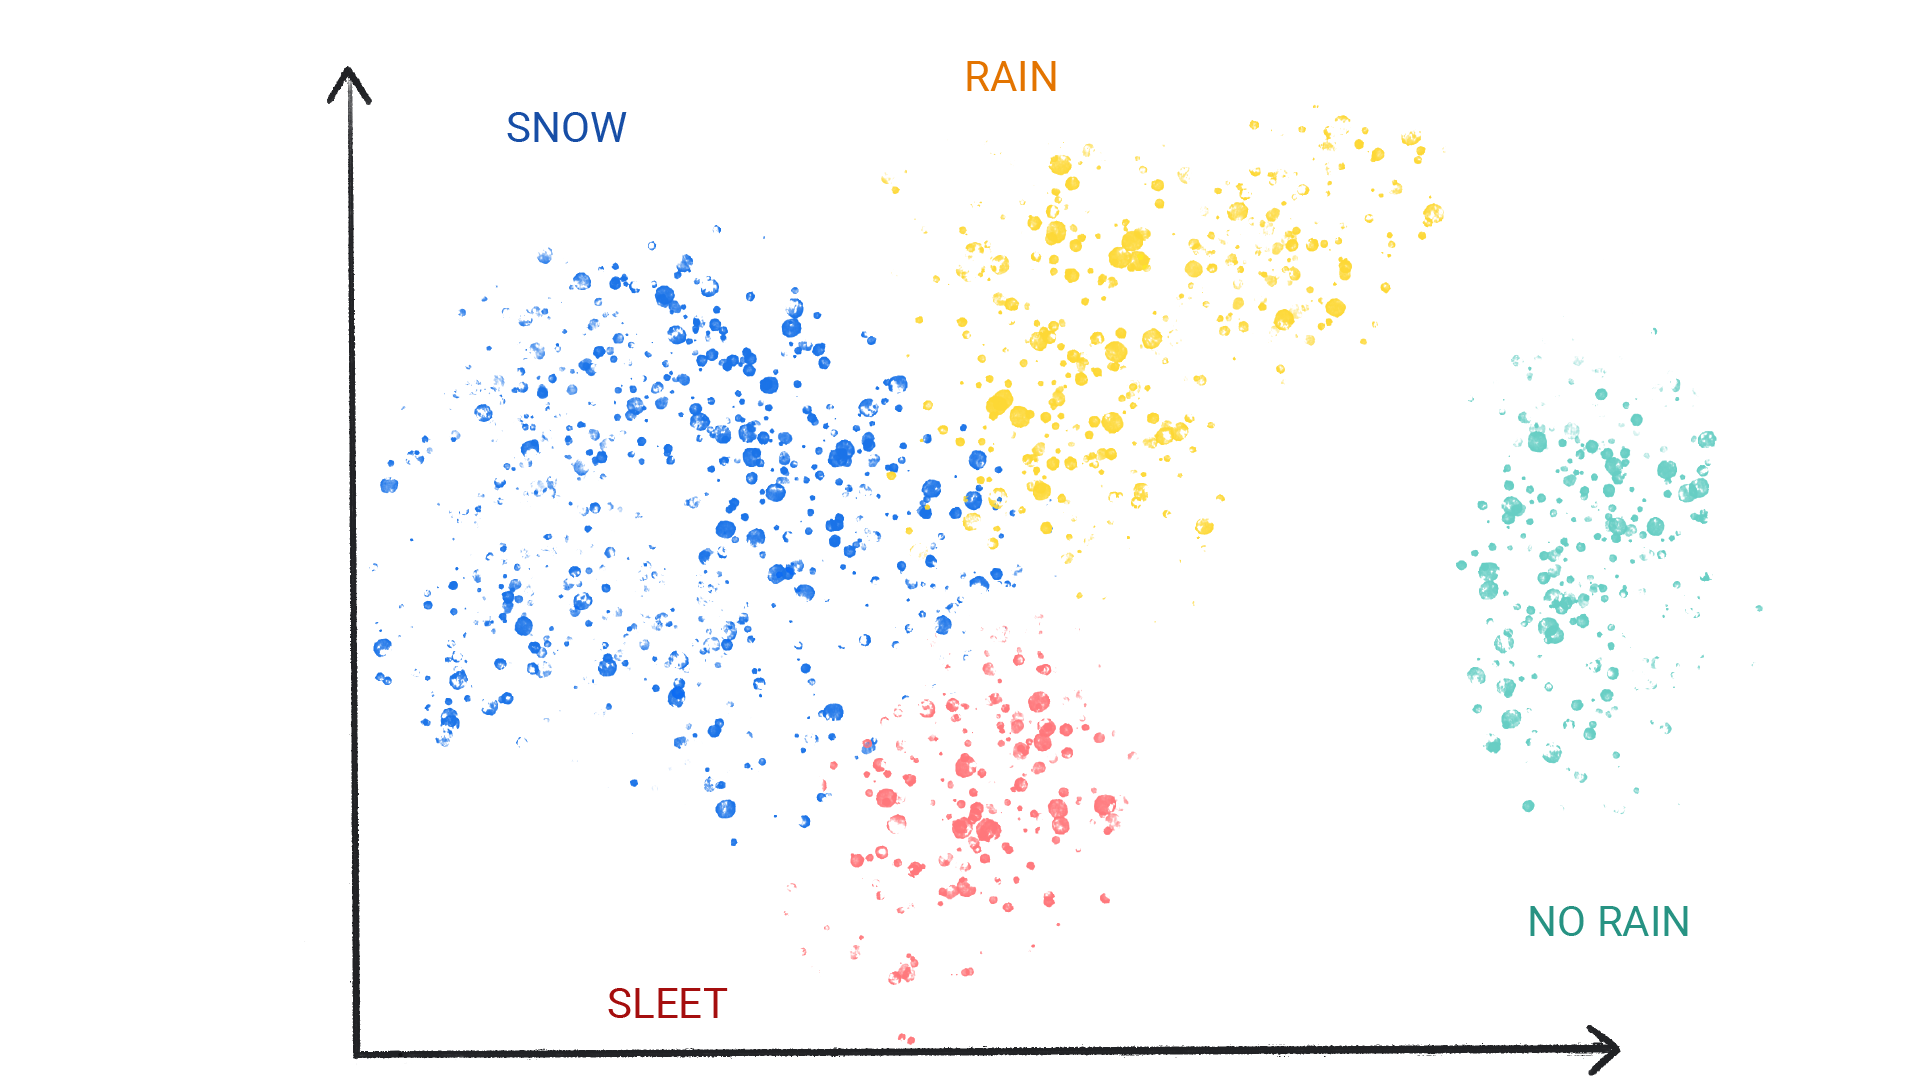 Una imagen que muestra puntos de colores en clústeres etiquetados como nieve, lluvia, granizo y sin lluvia.